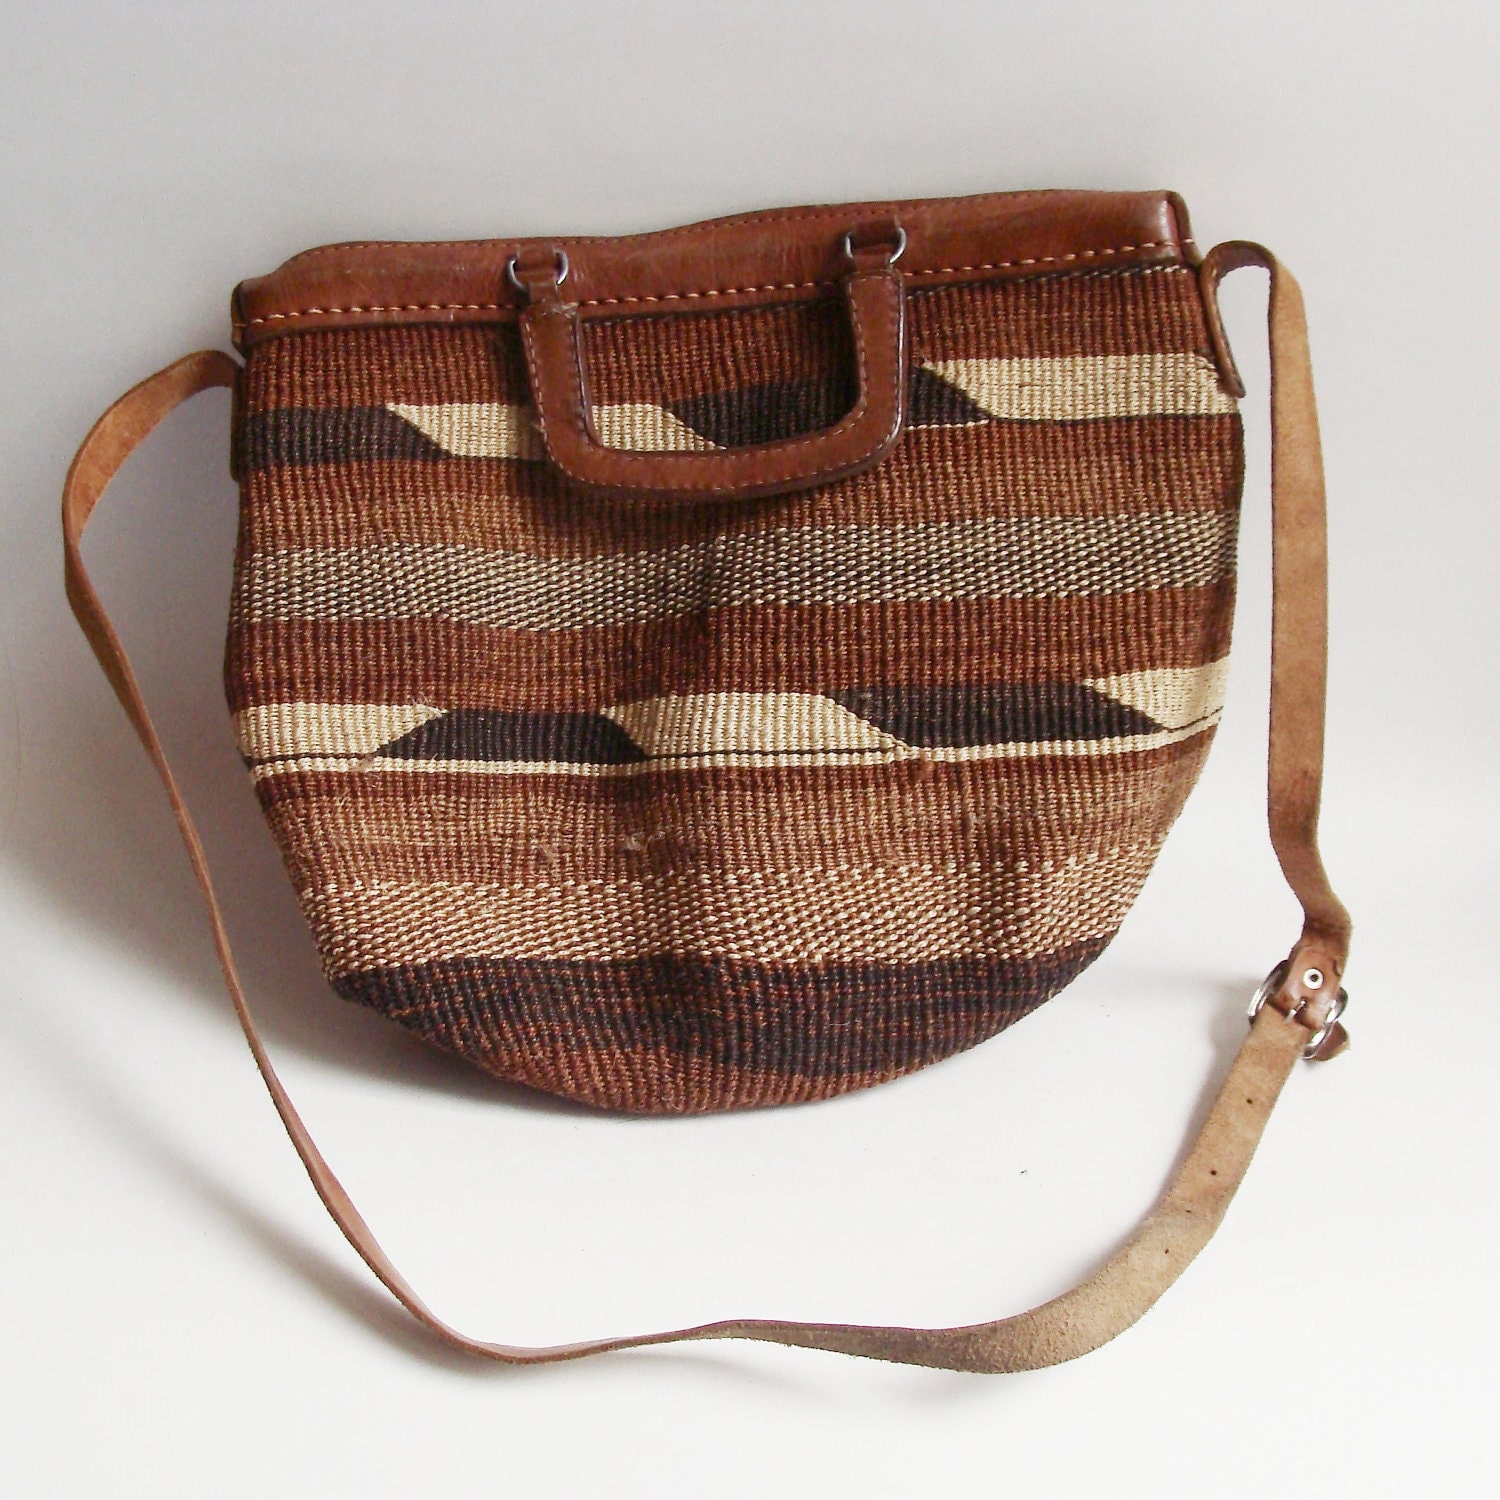 sisal woven bag | Bags, Woven bag, Tote bag